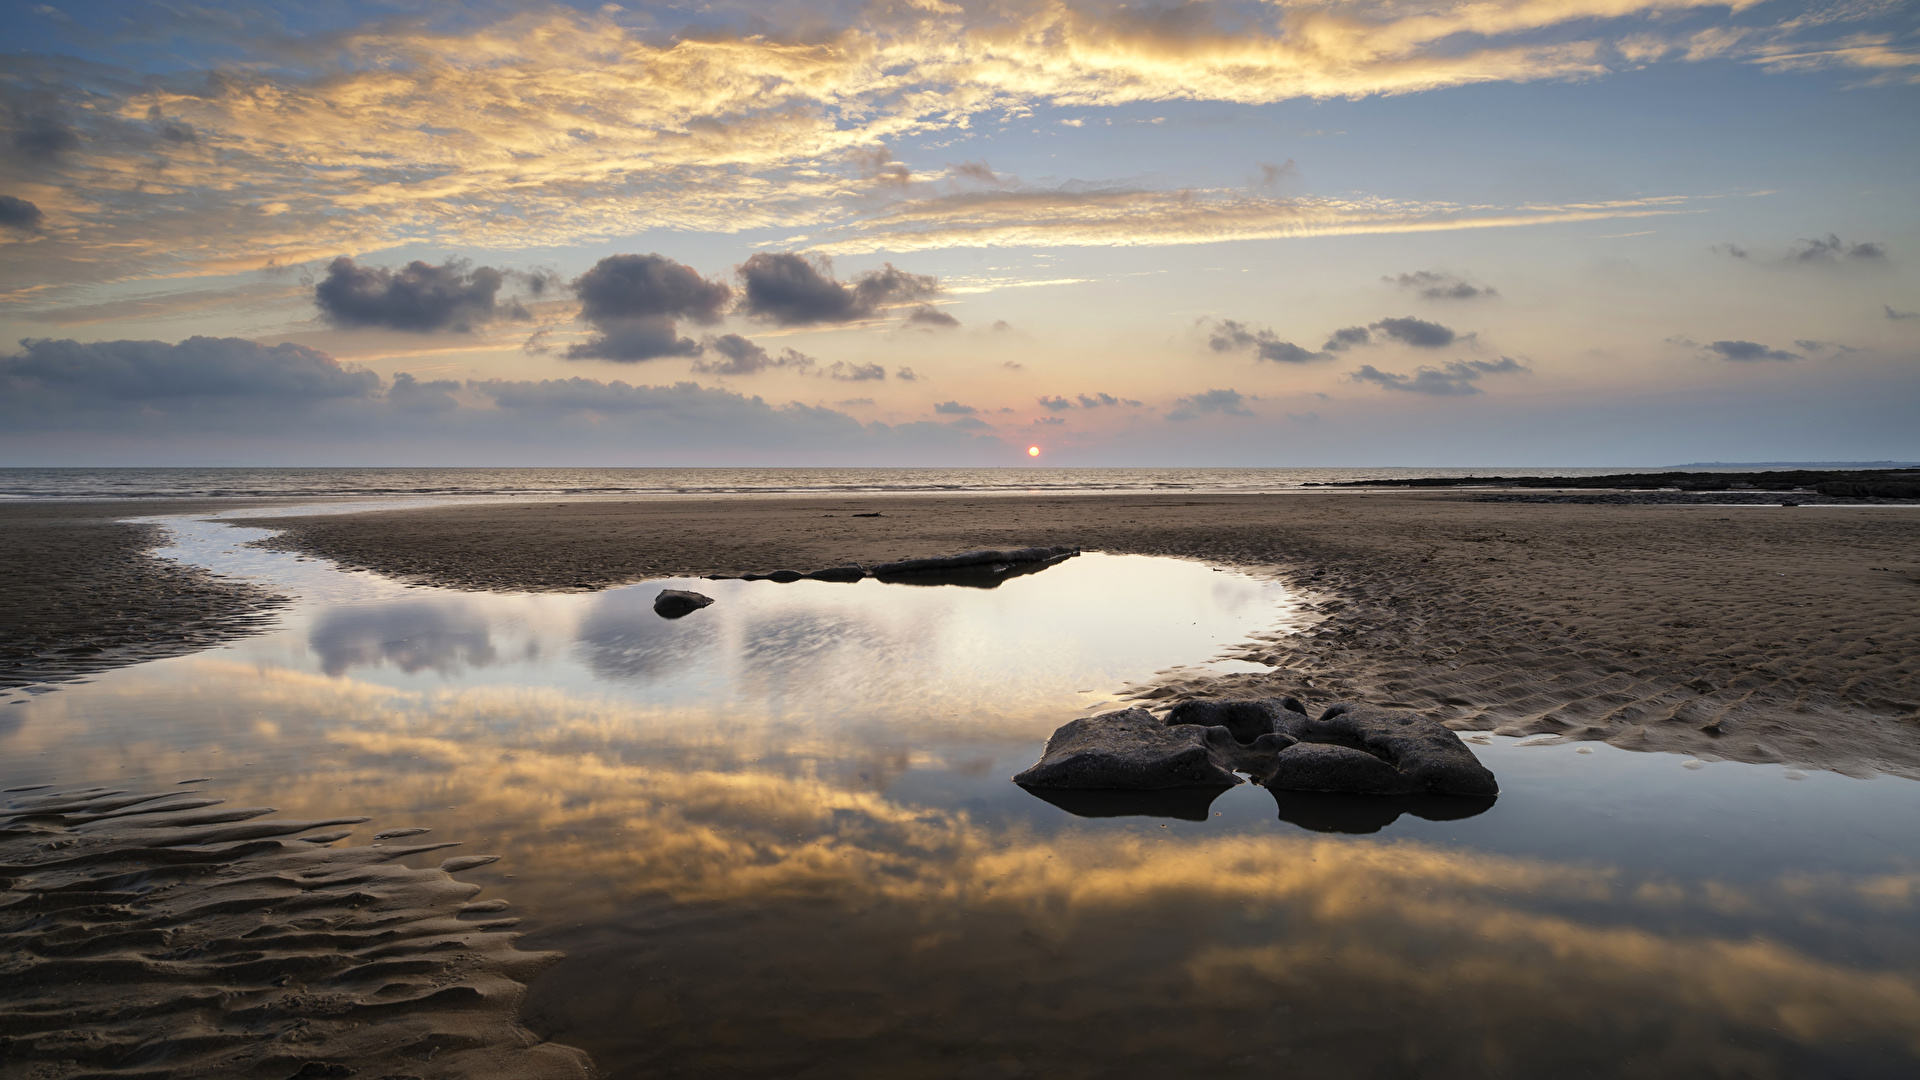 壁紙 19x1080 イギリス 風景写真 朝焼けと日没 海岸 水 空 石 Dunraven Bay 雲 ビーチ ウェールズ 自然 ダウンロード 写真